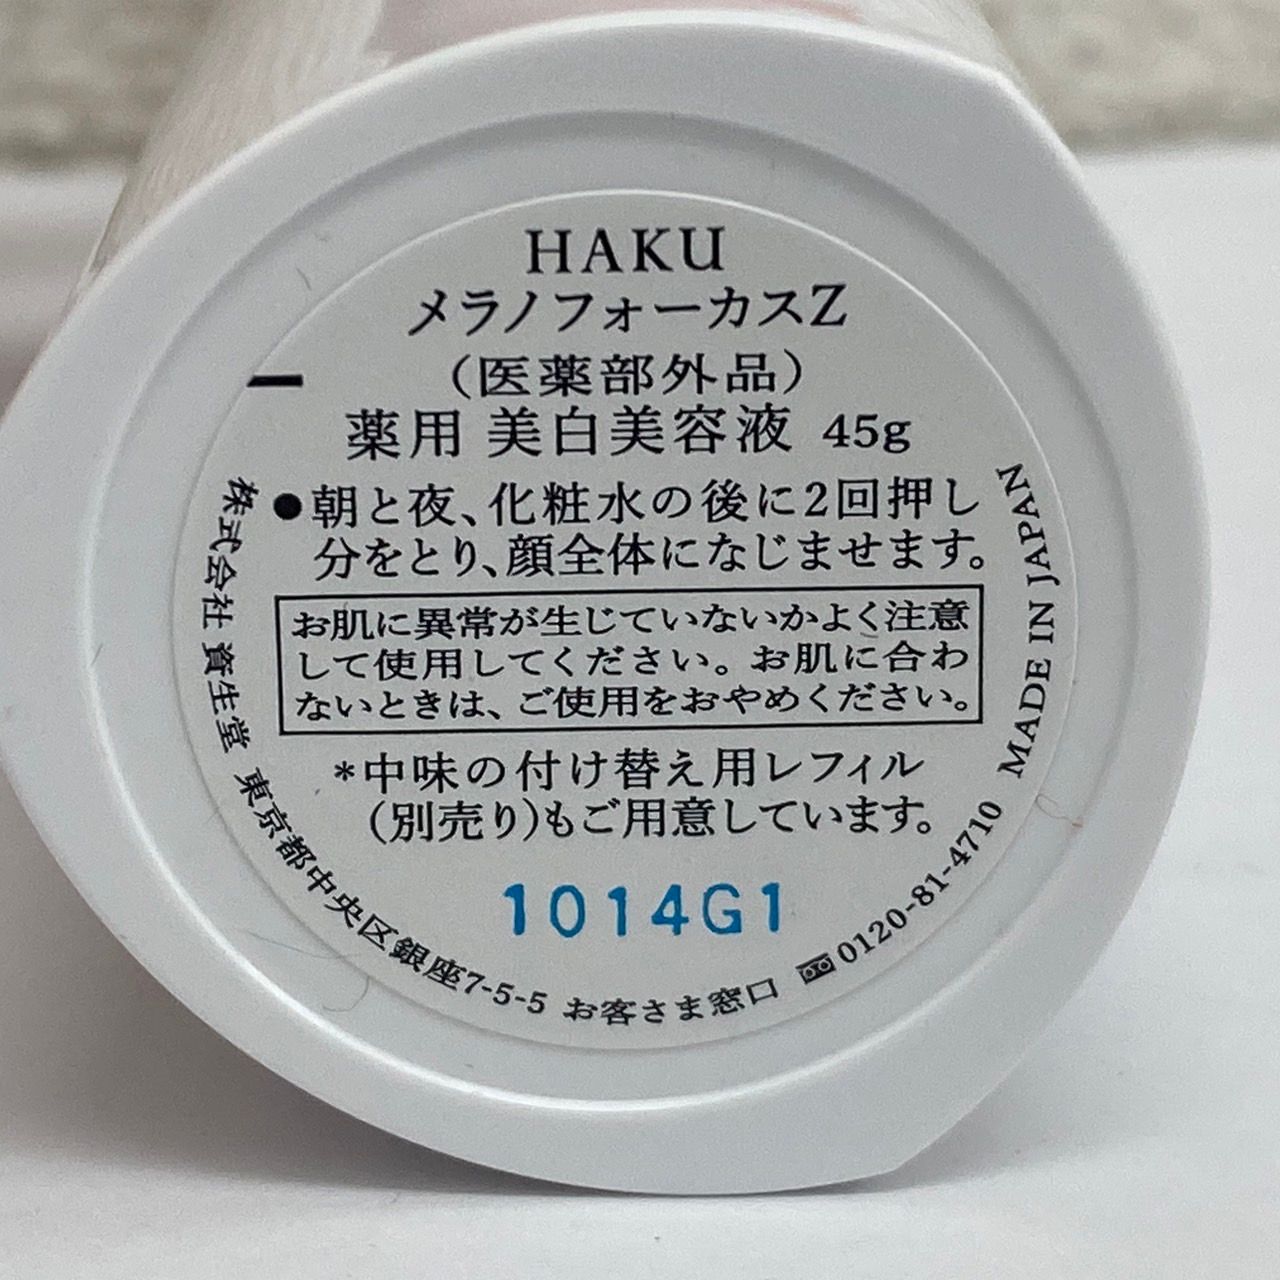 HAKU メラノフォーカスZ〈医薬部外品〉薬用 美白美容液 45g - 美容液